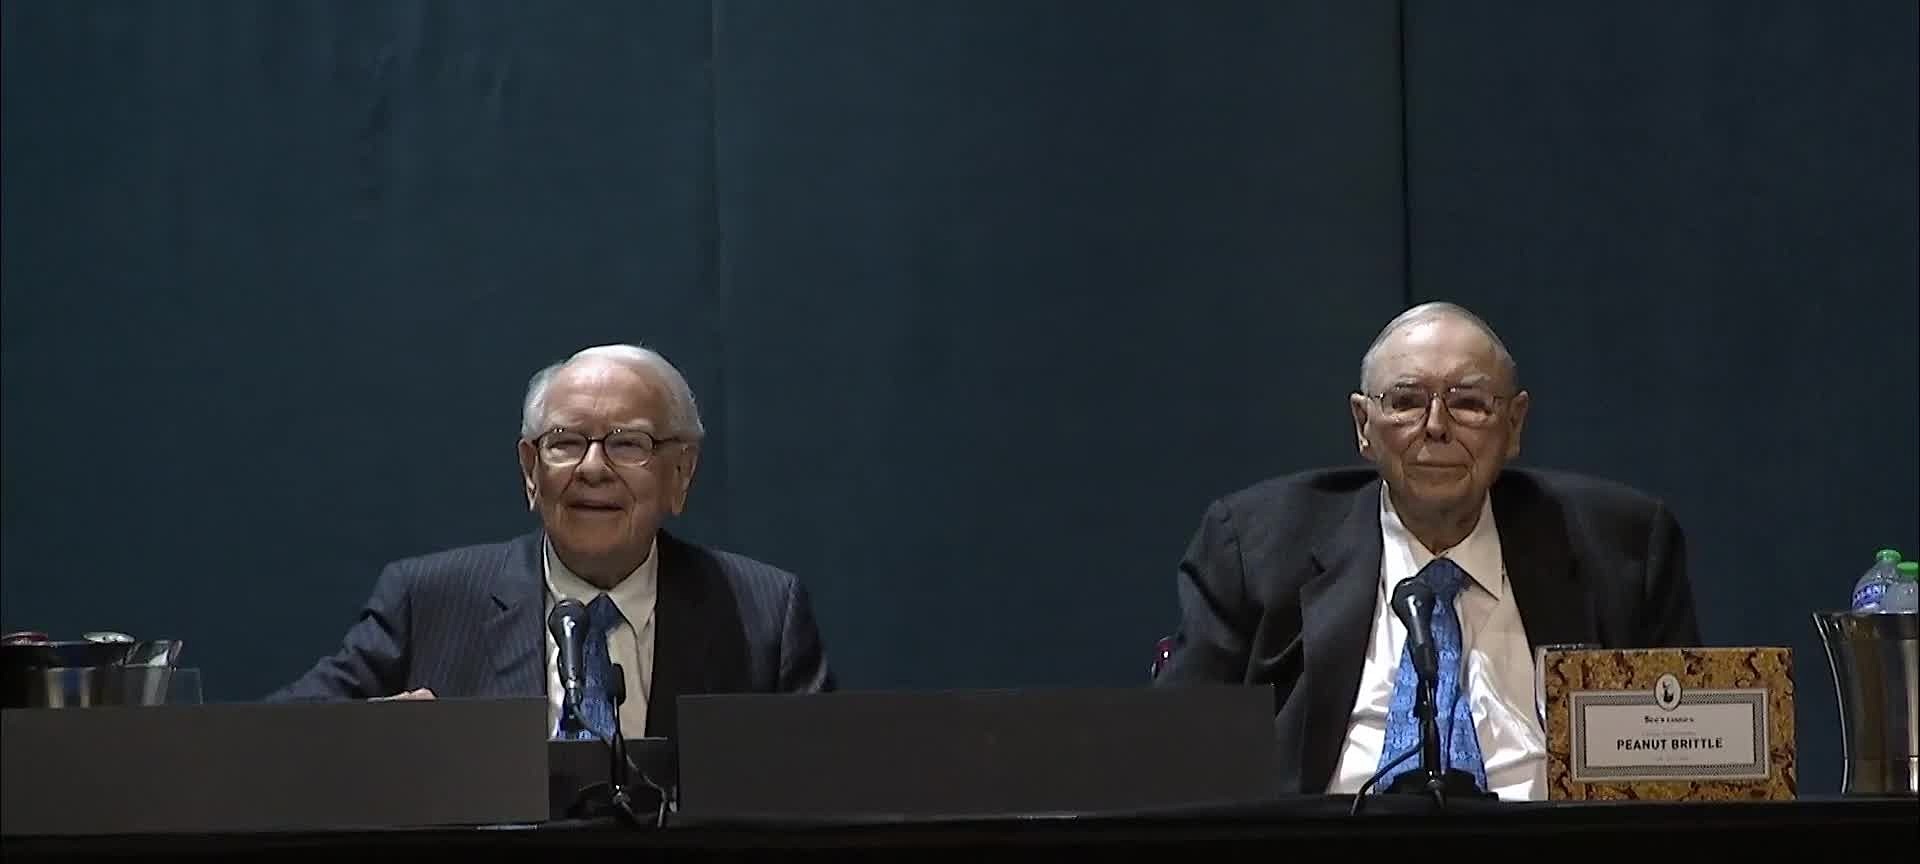 Warren Buffett và Phó tướng Charlie Munger tại ĐHCĐ Berkshire Hathaway hôm 6/5. Ảnh:CNBC